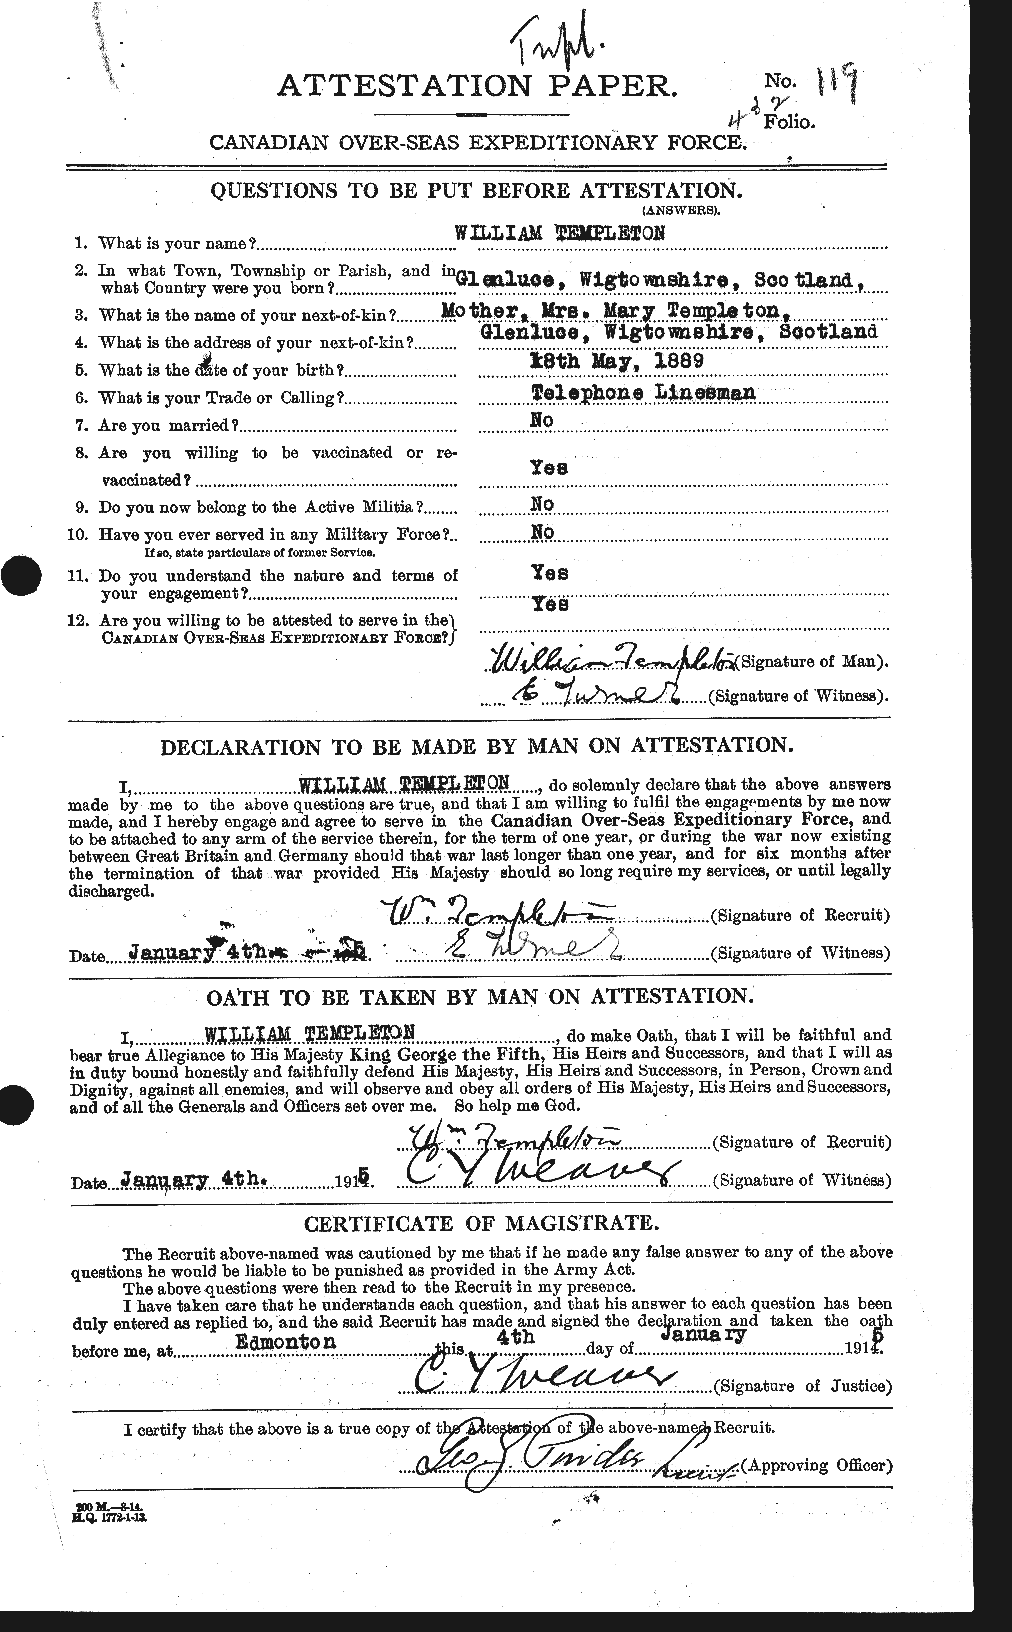 Dossiers du Personnel de la Première Guerre mondiale - CEC 629181a